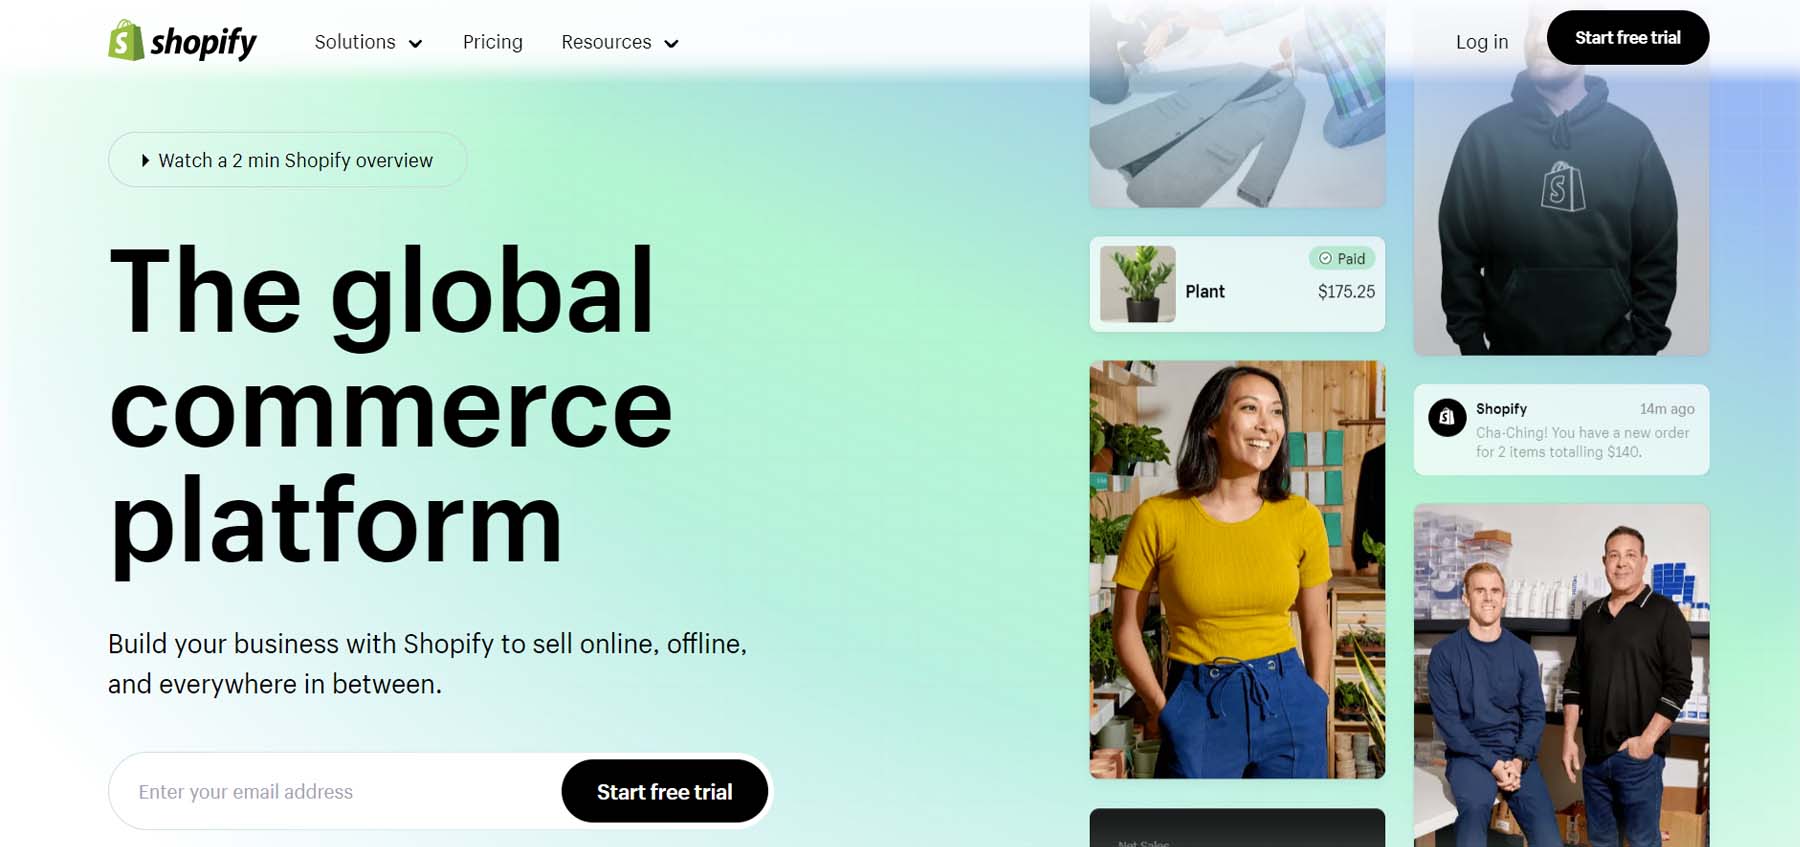 Shopify website builder and eCommerce platform